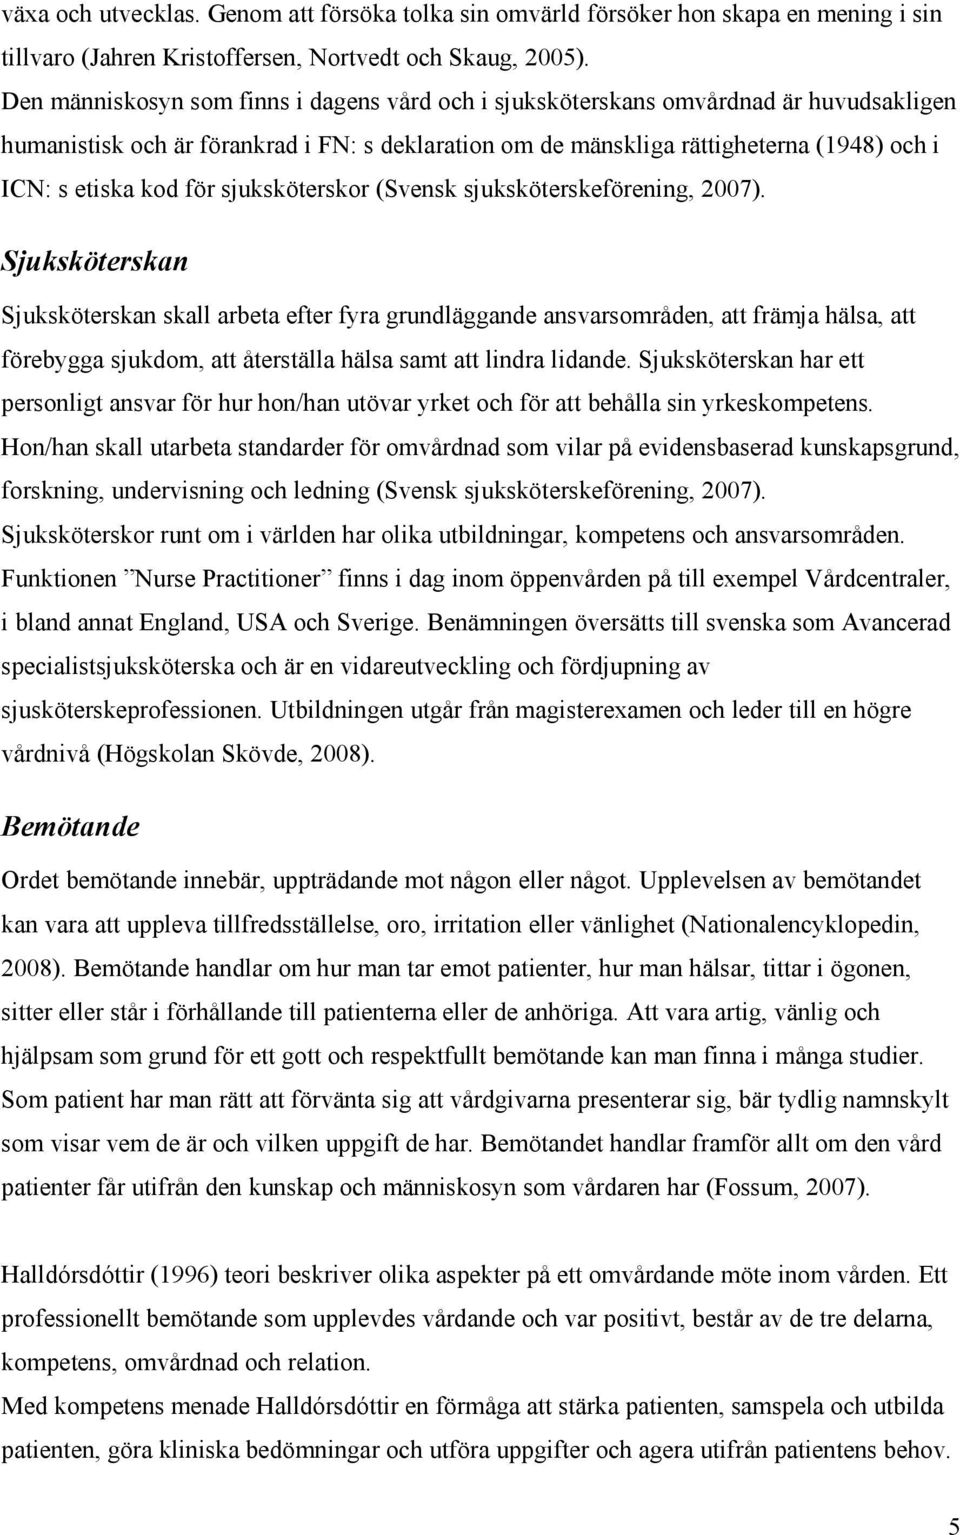 för sjuksköterskor (Svensk sjuksköterskeförening, 2007).